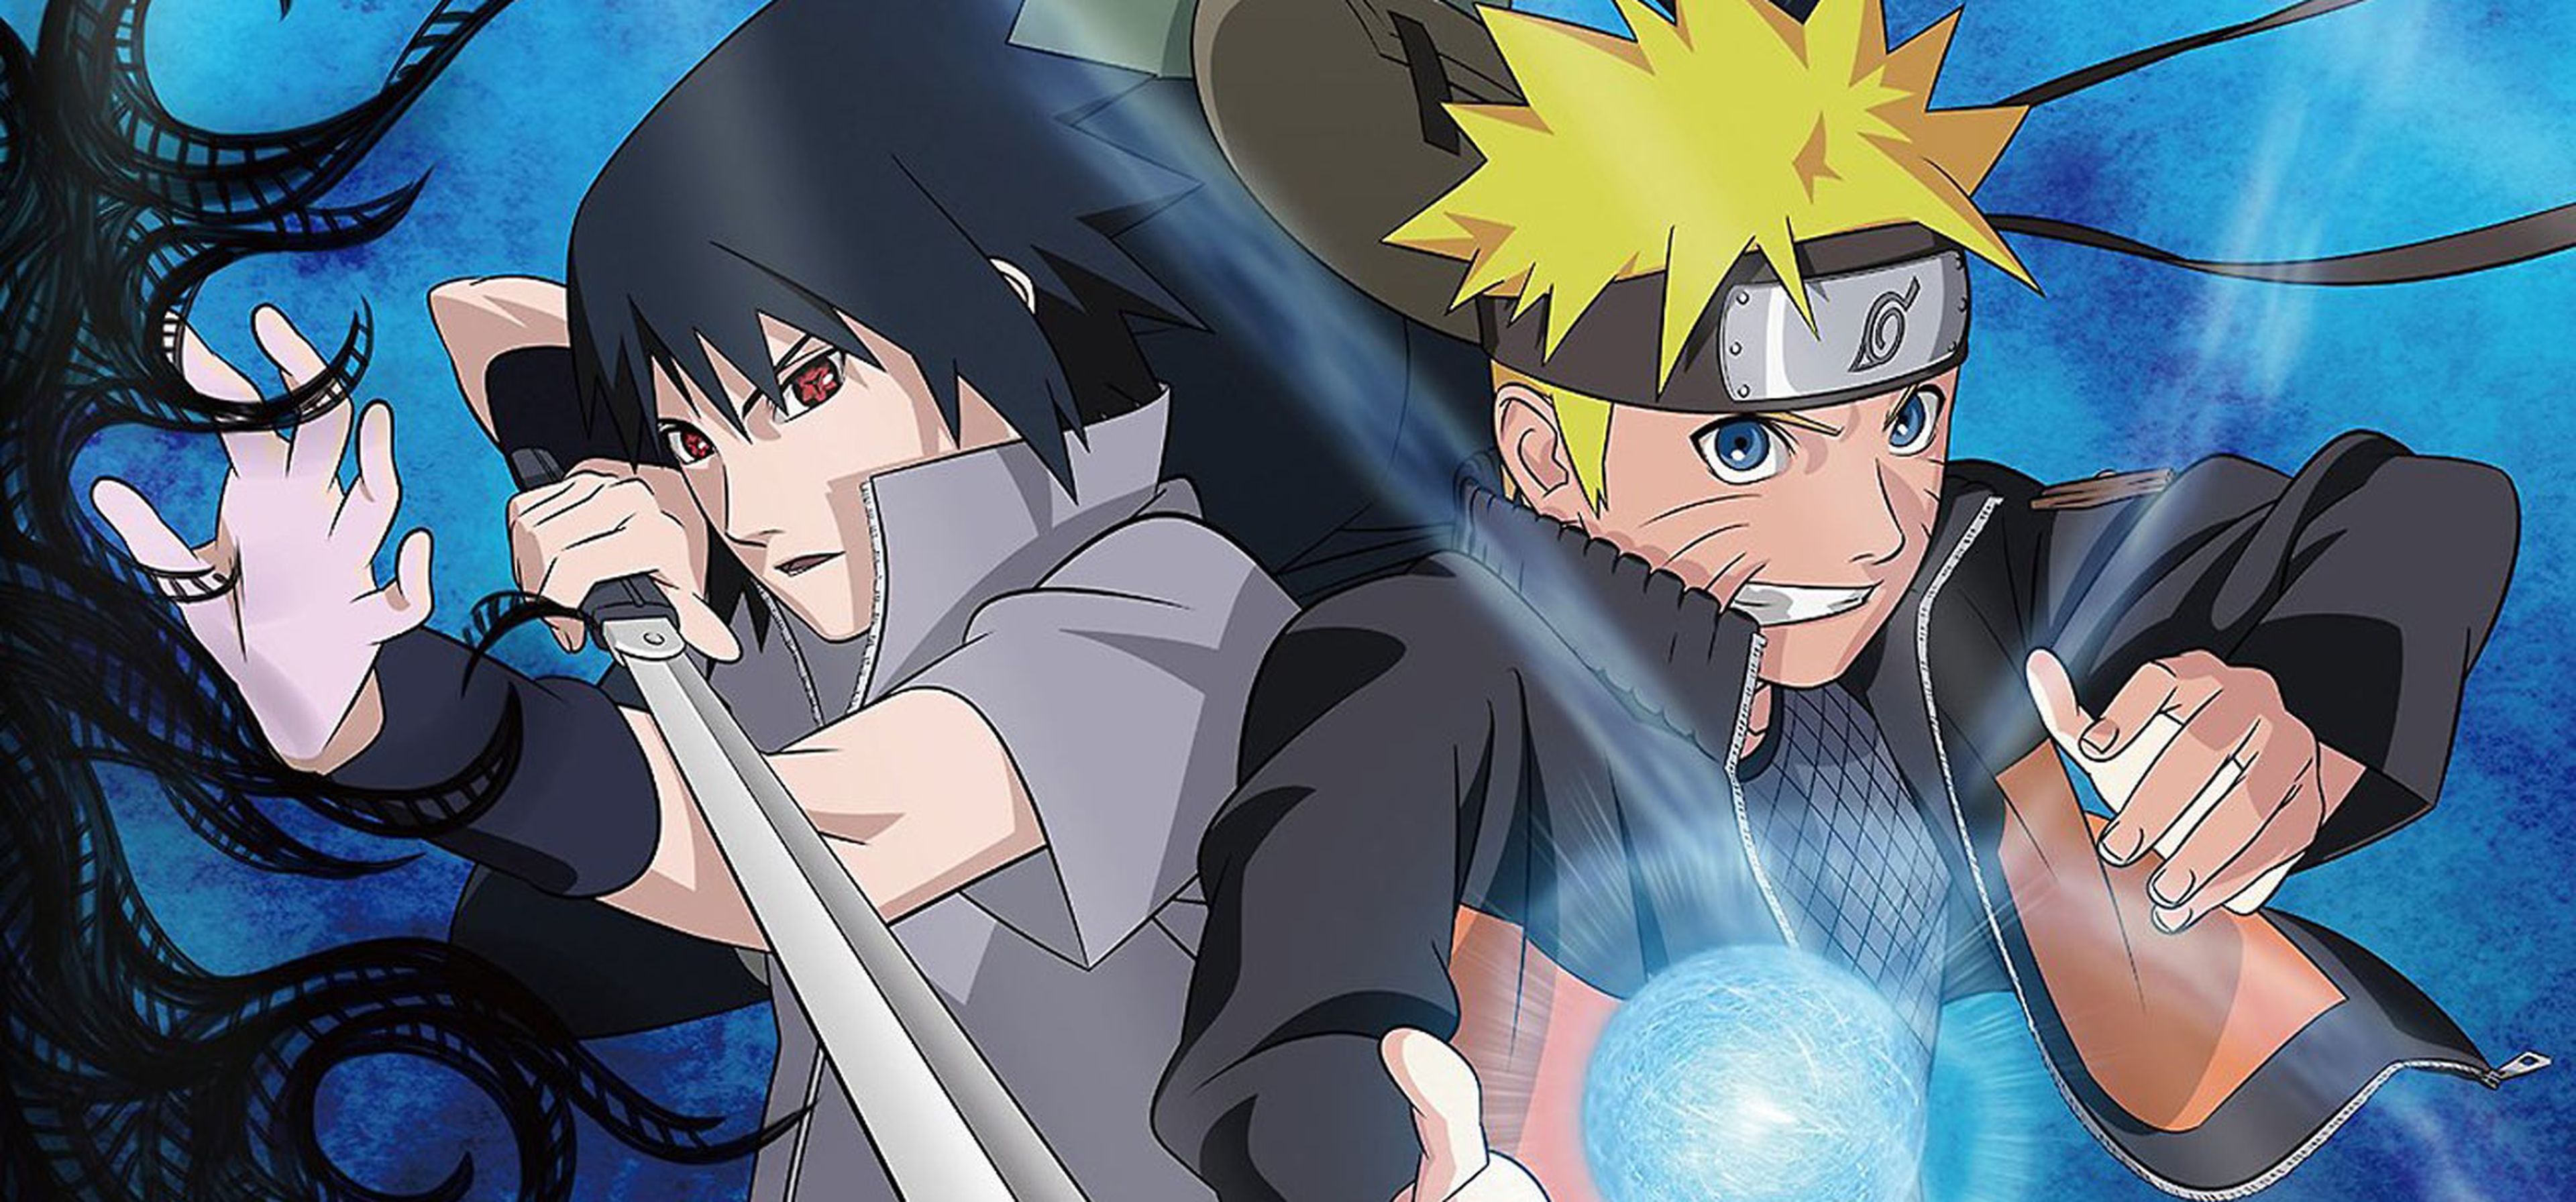 El fin de una era: Hoy se emitió el último capítulo de Naruto - La